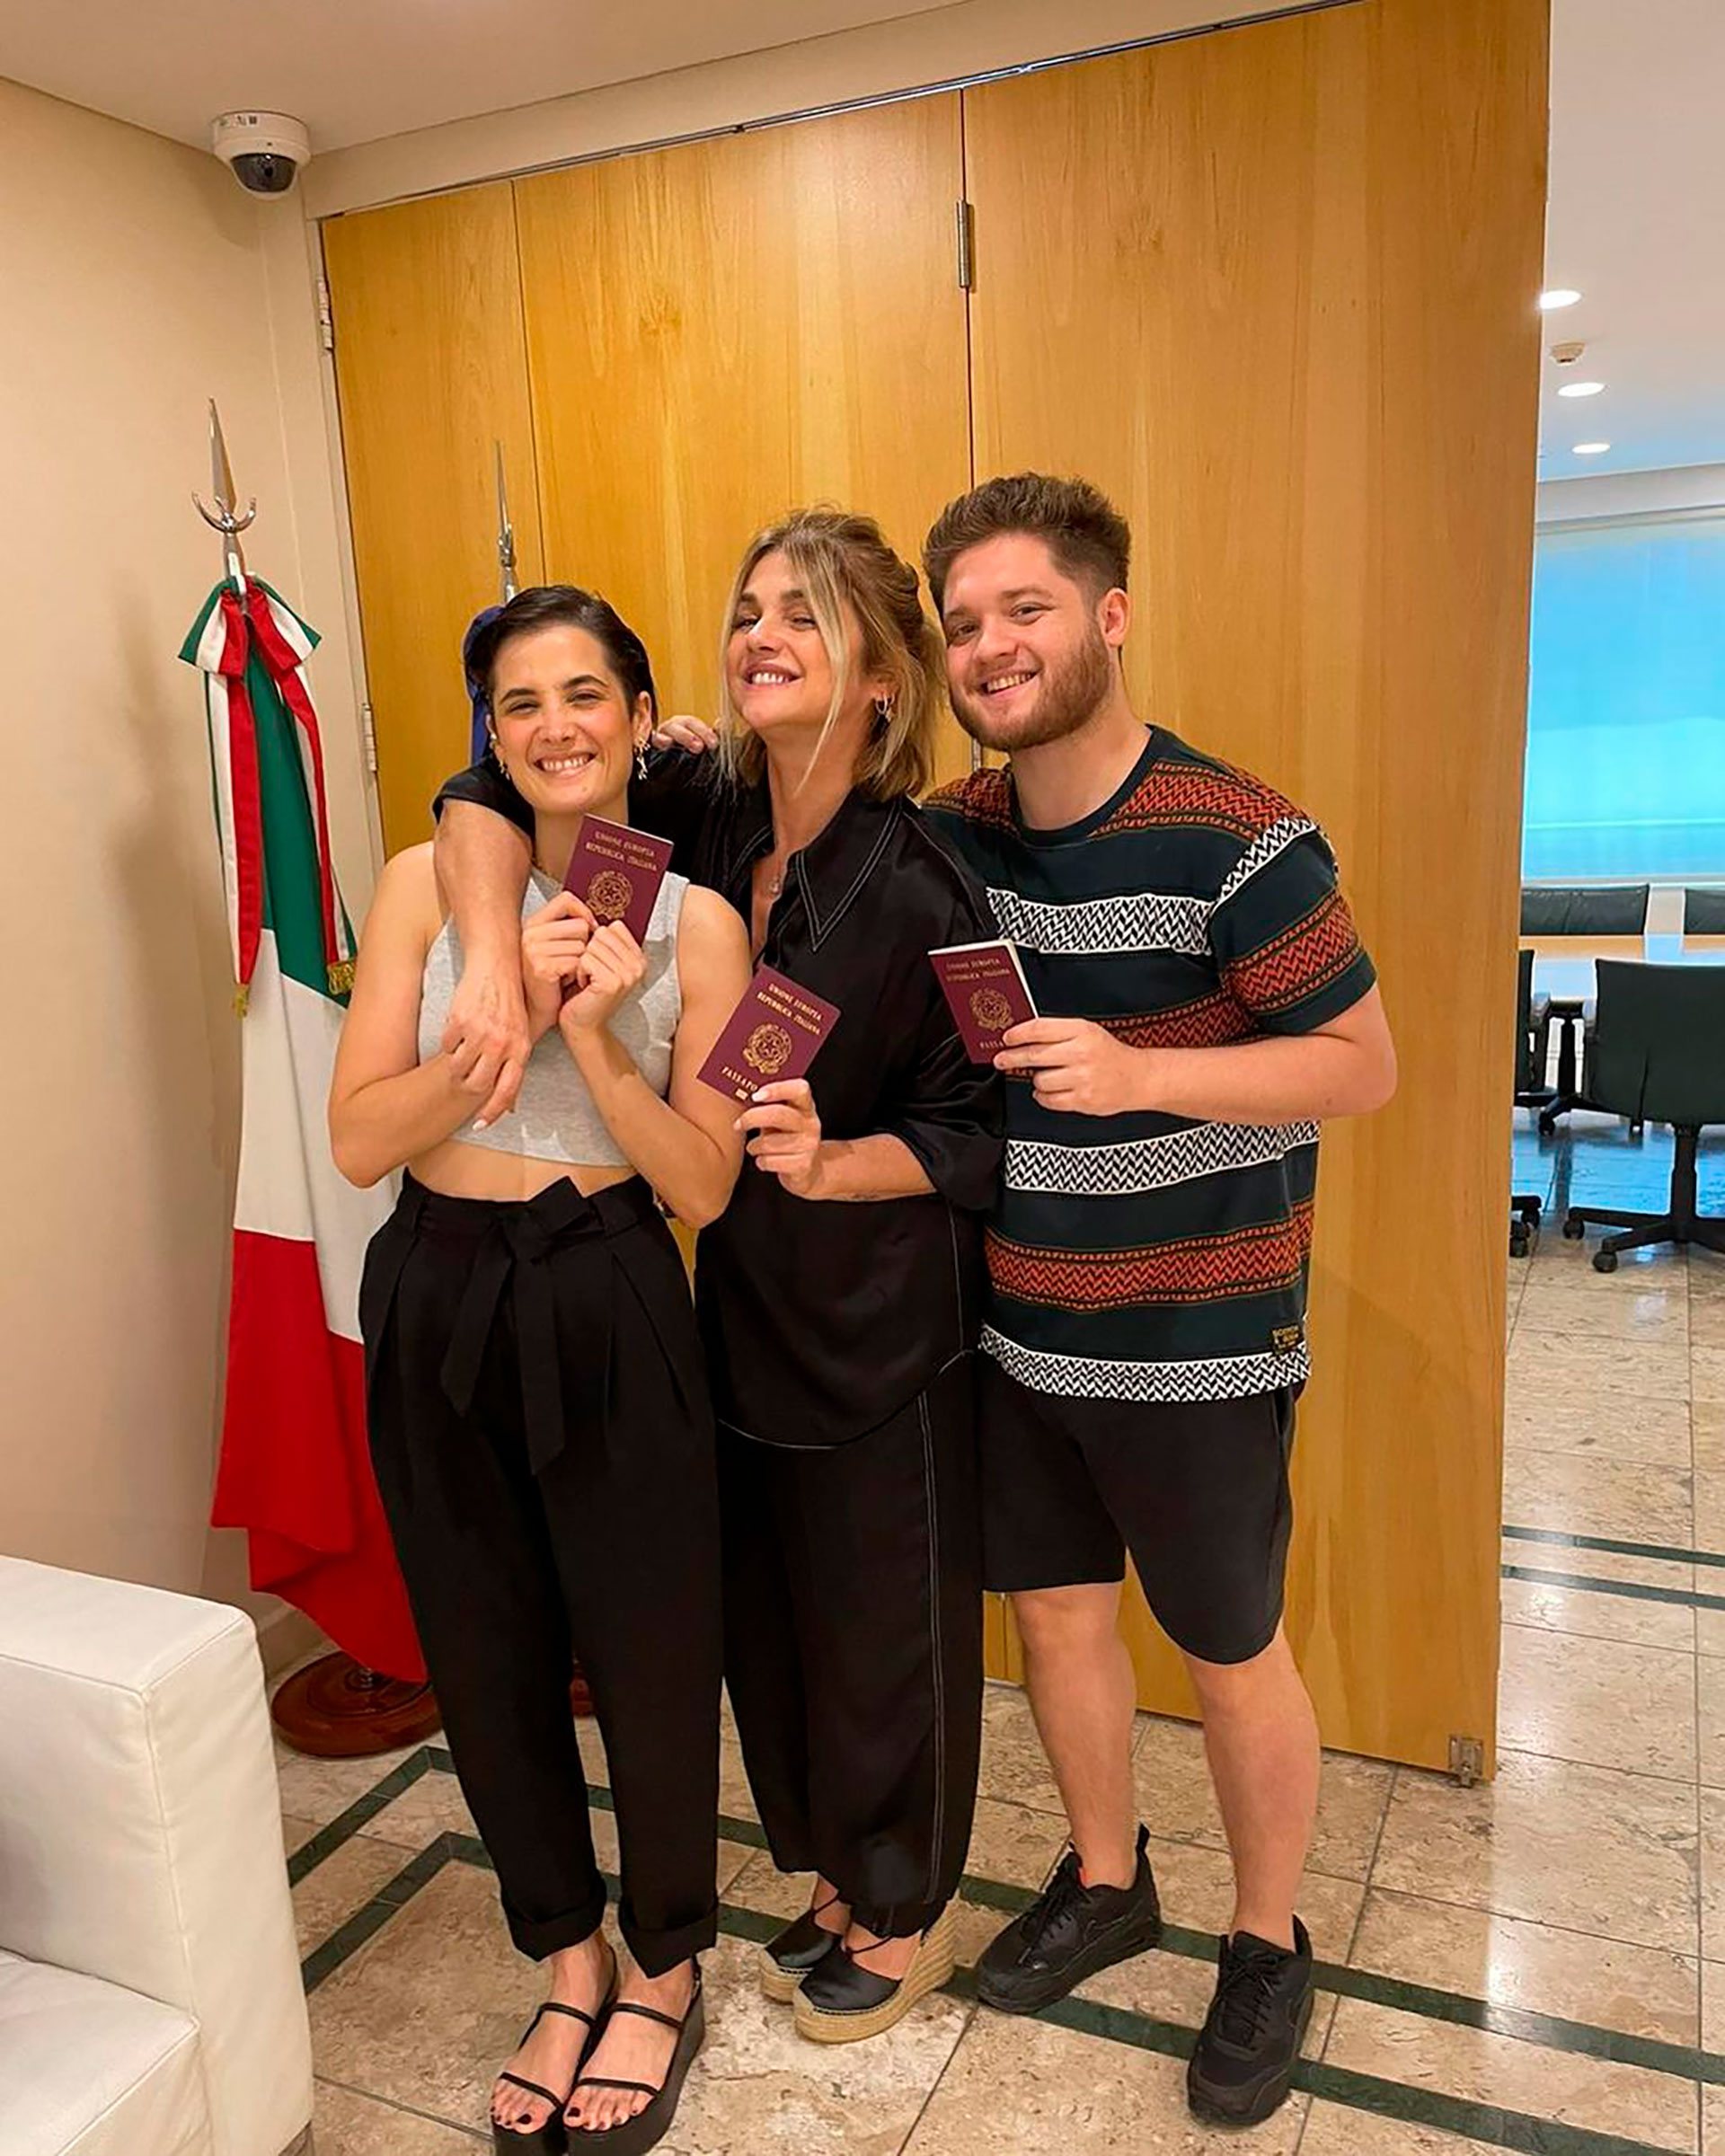 Araceli González con sus hijos Flor Torrente y Toto Kirzner y con el pasaporte que documenta que los tres ya son oficialmente ciudadanos italianos. "Es uno de los días más emocionantes de mi vida", señaló la actriz en sus redes sociales, donde compartió la imagen (Instagram)